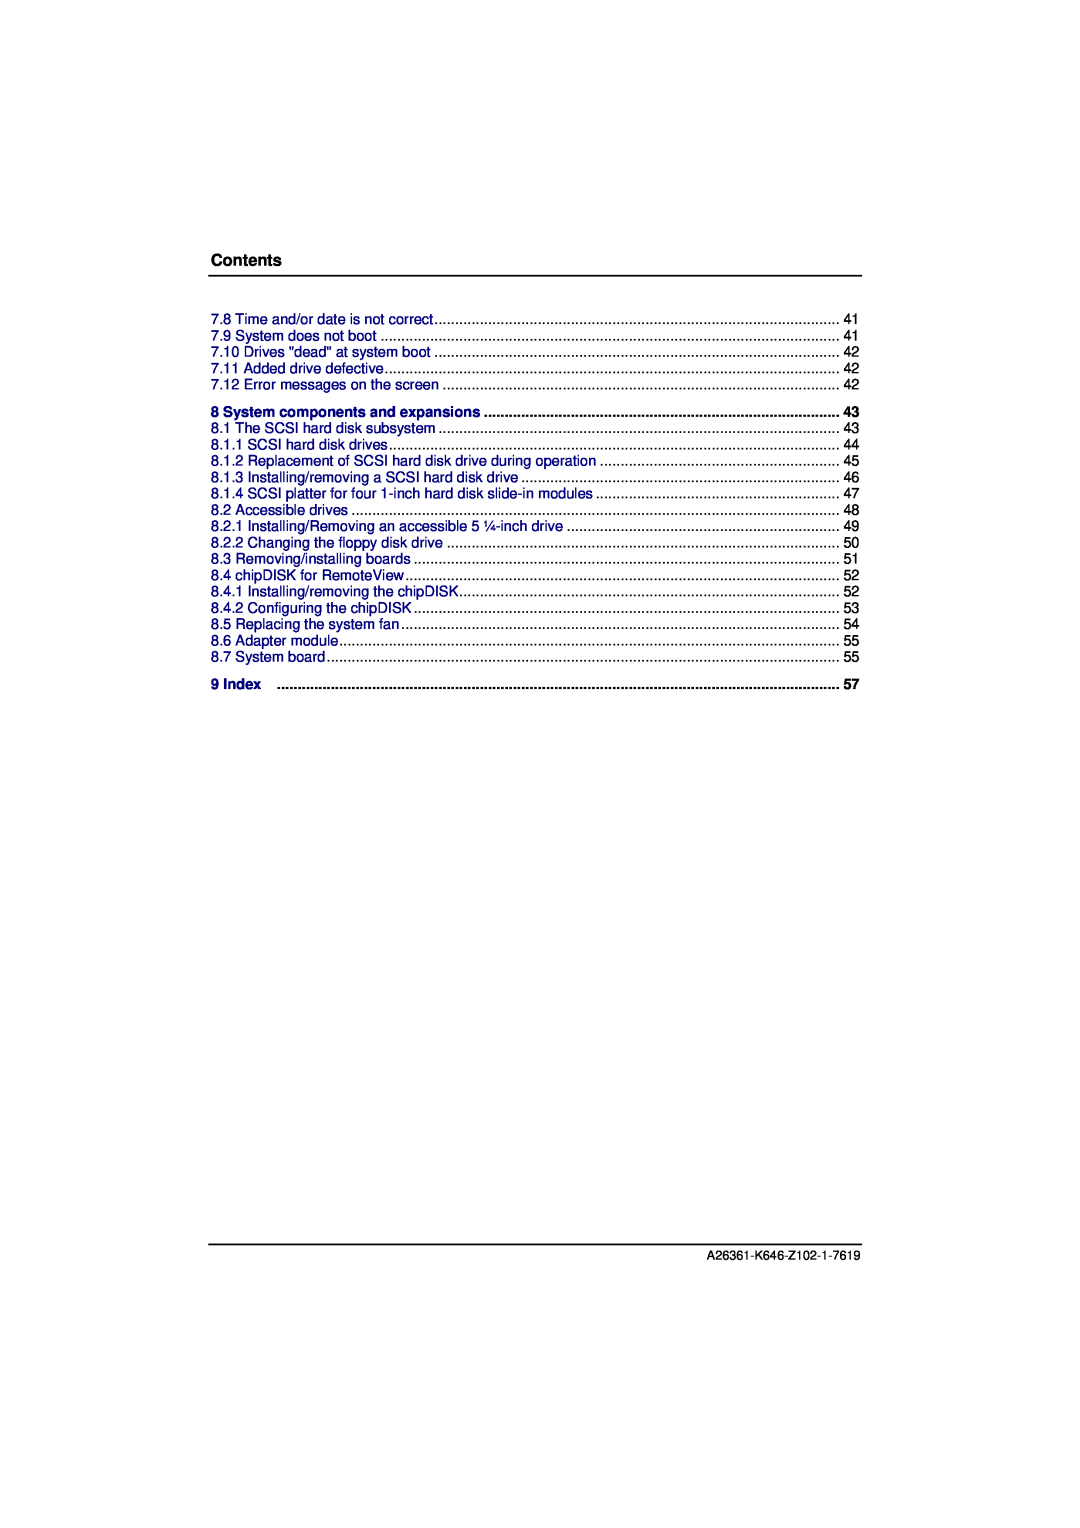 Fujitsu B120 manual Contents, Index 